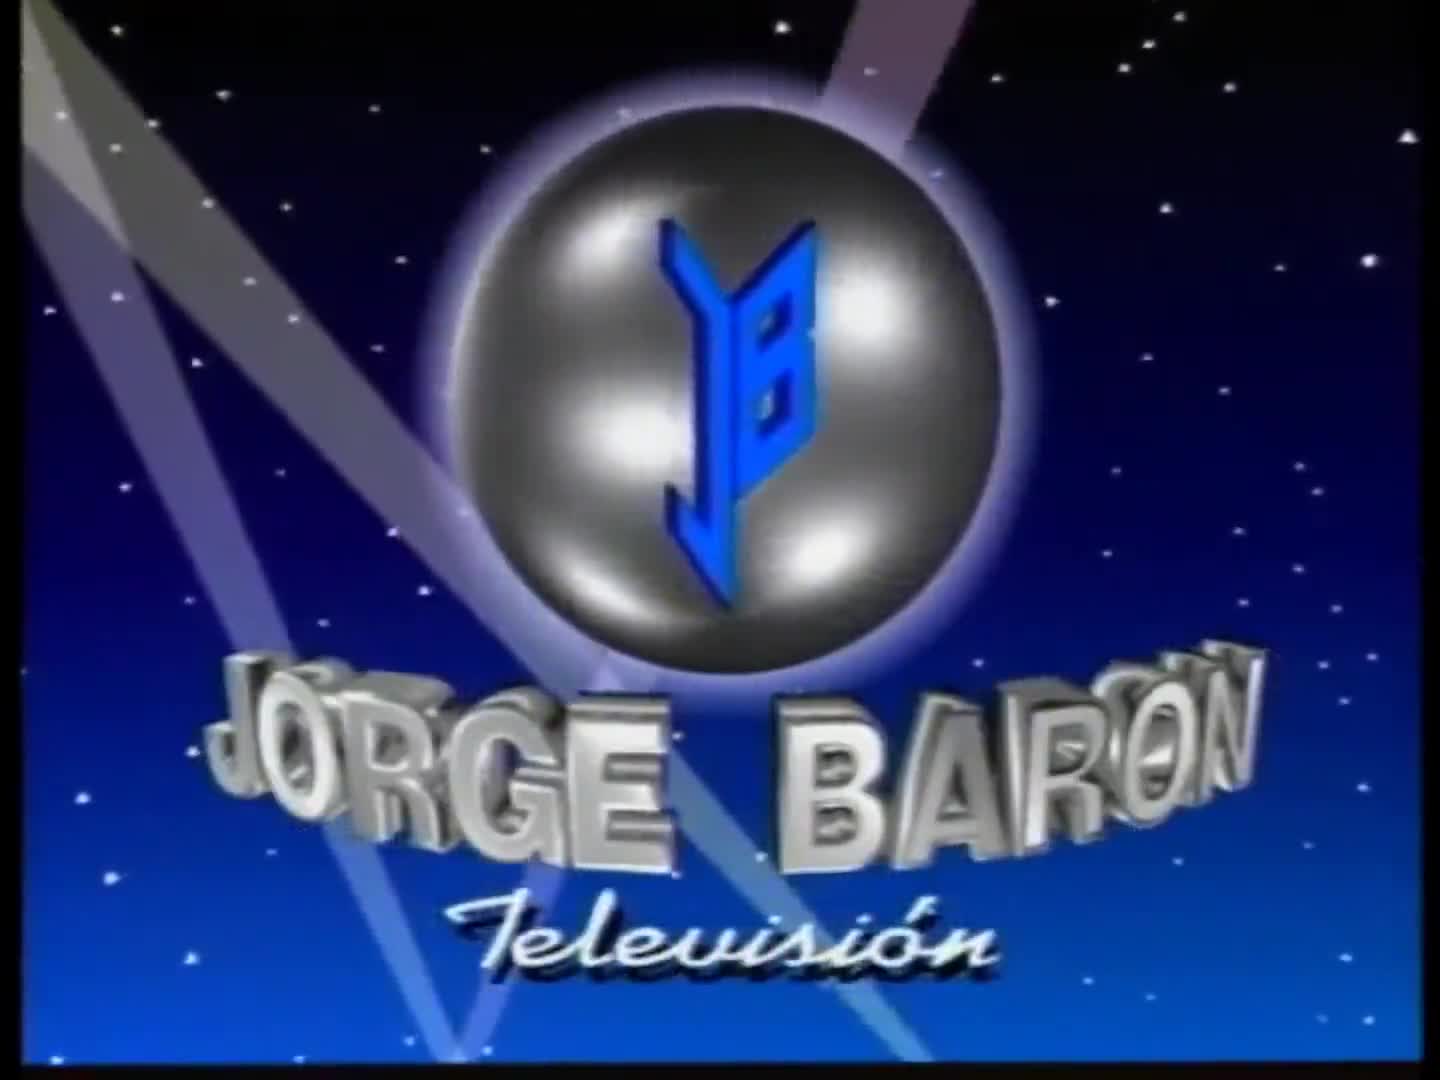 Jorge Baron Televisión (1991-2017)